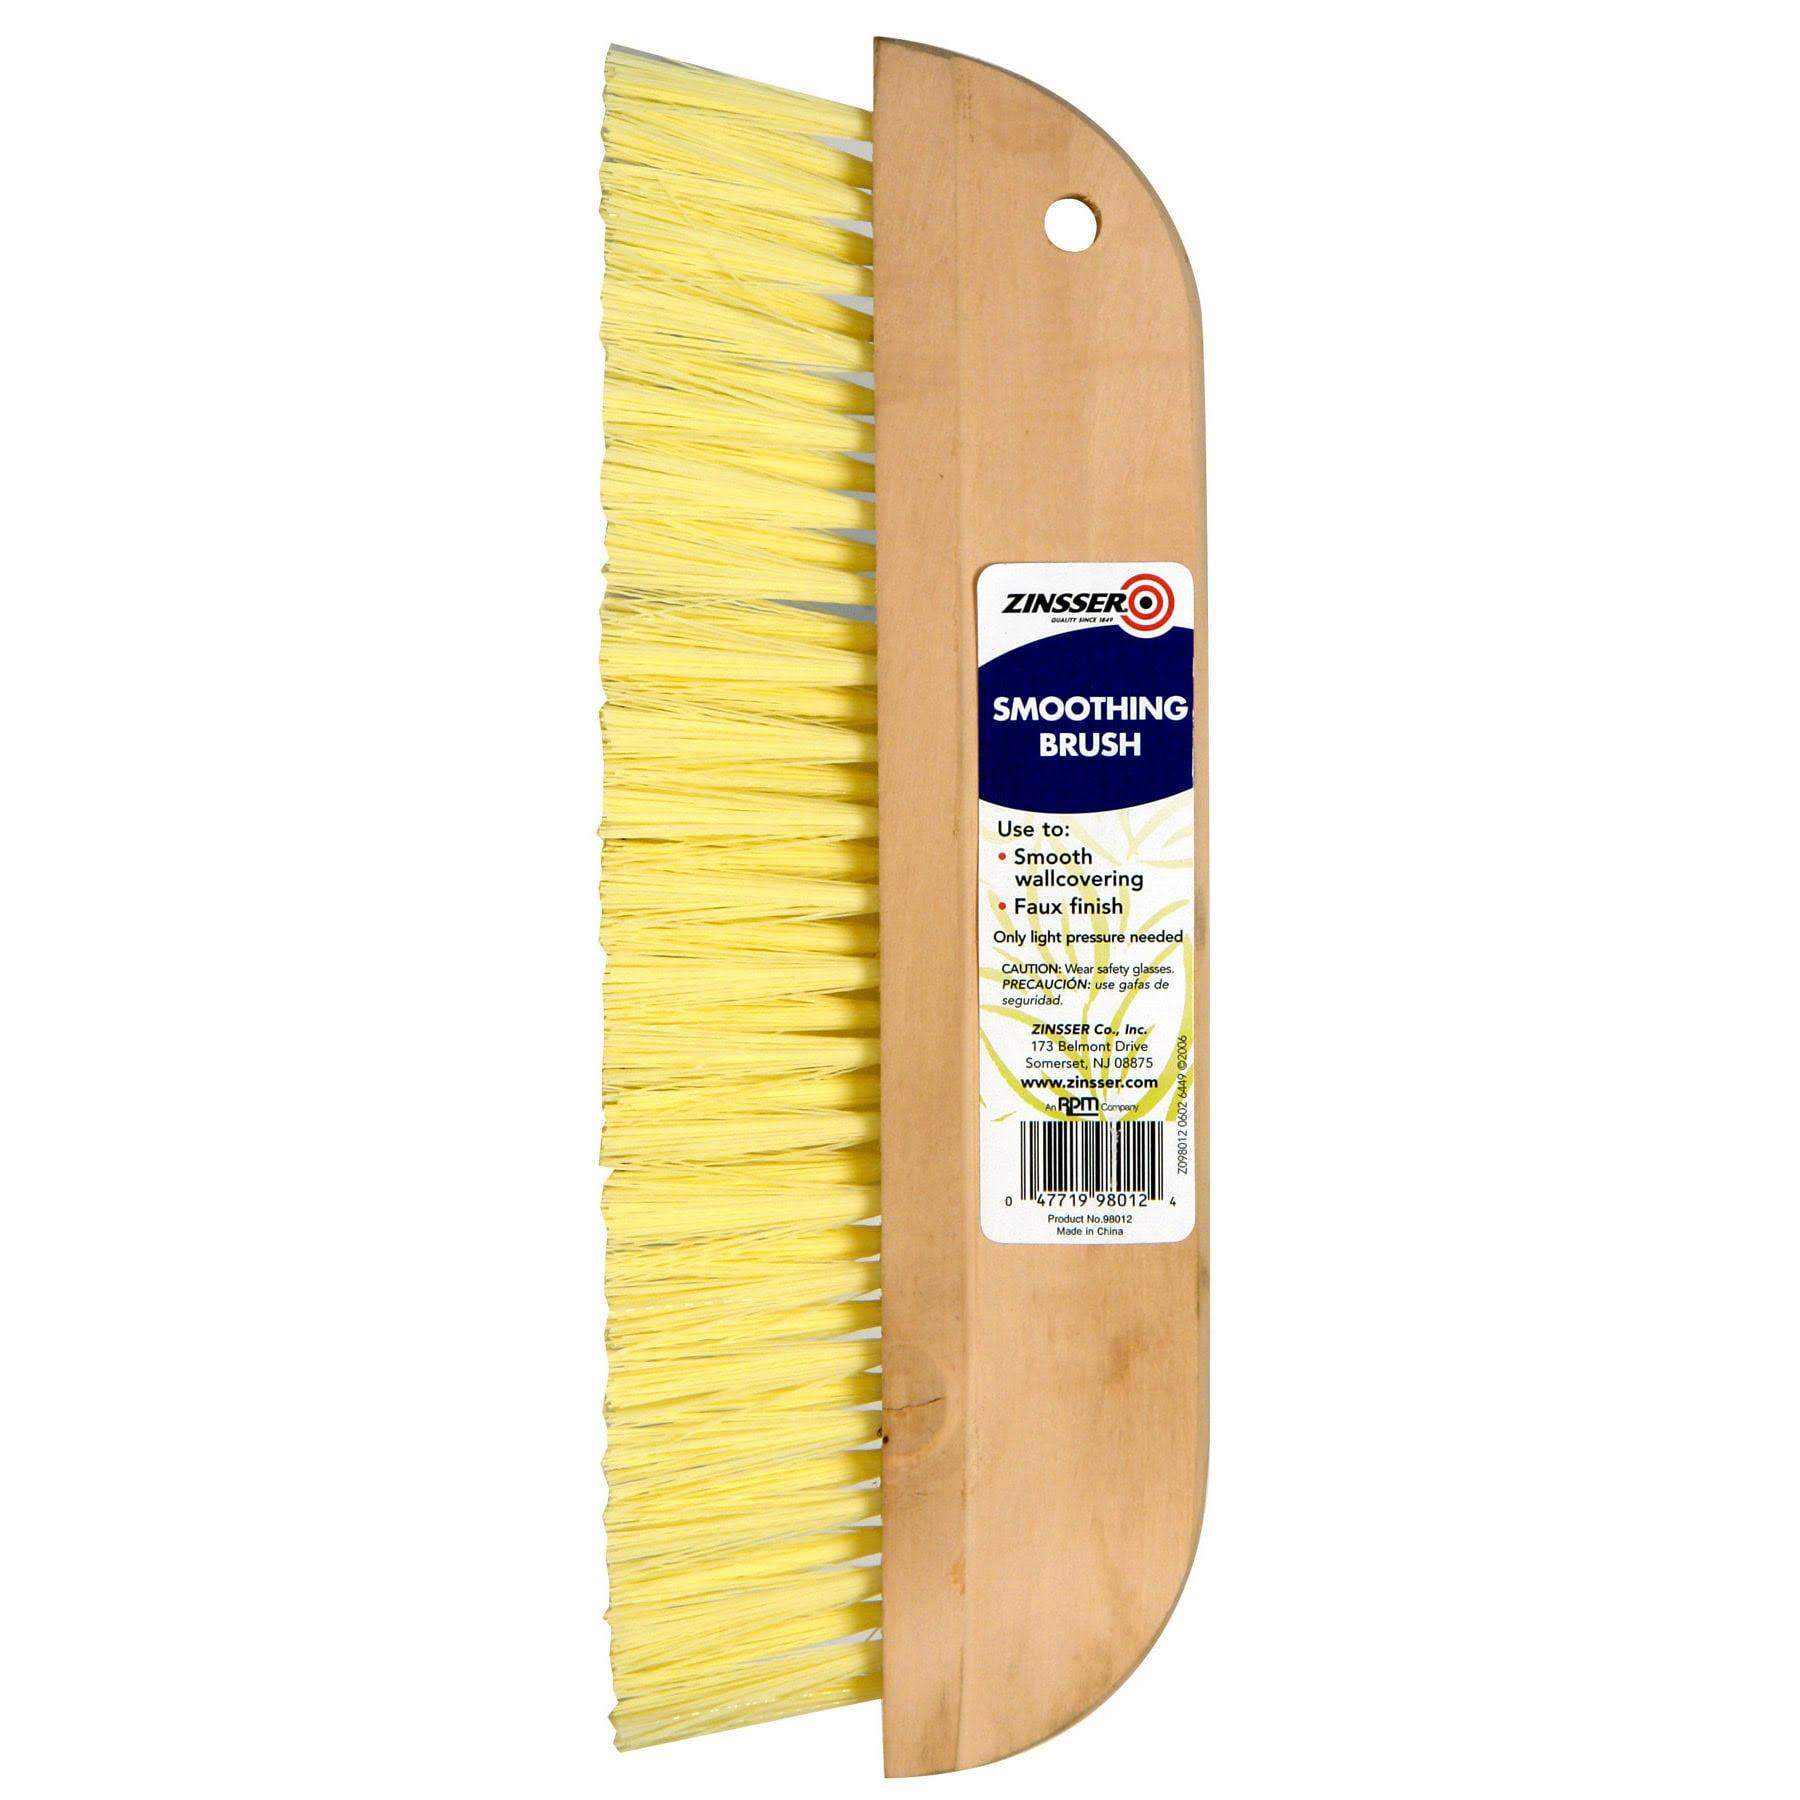 Zinsser 98012 Smoothing Brush - Yellow, 12"